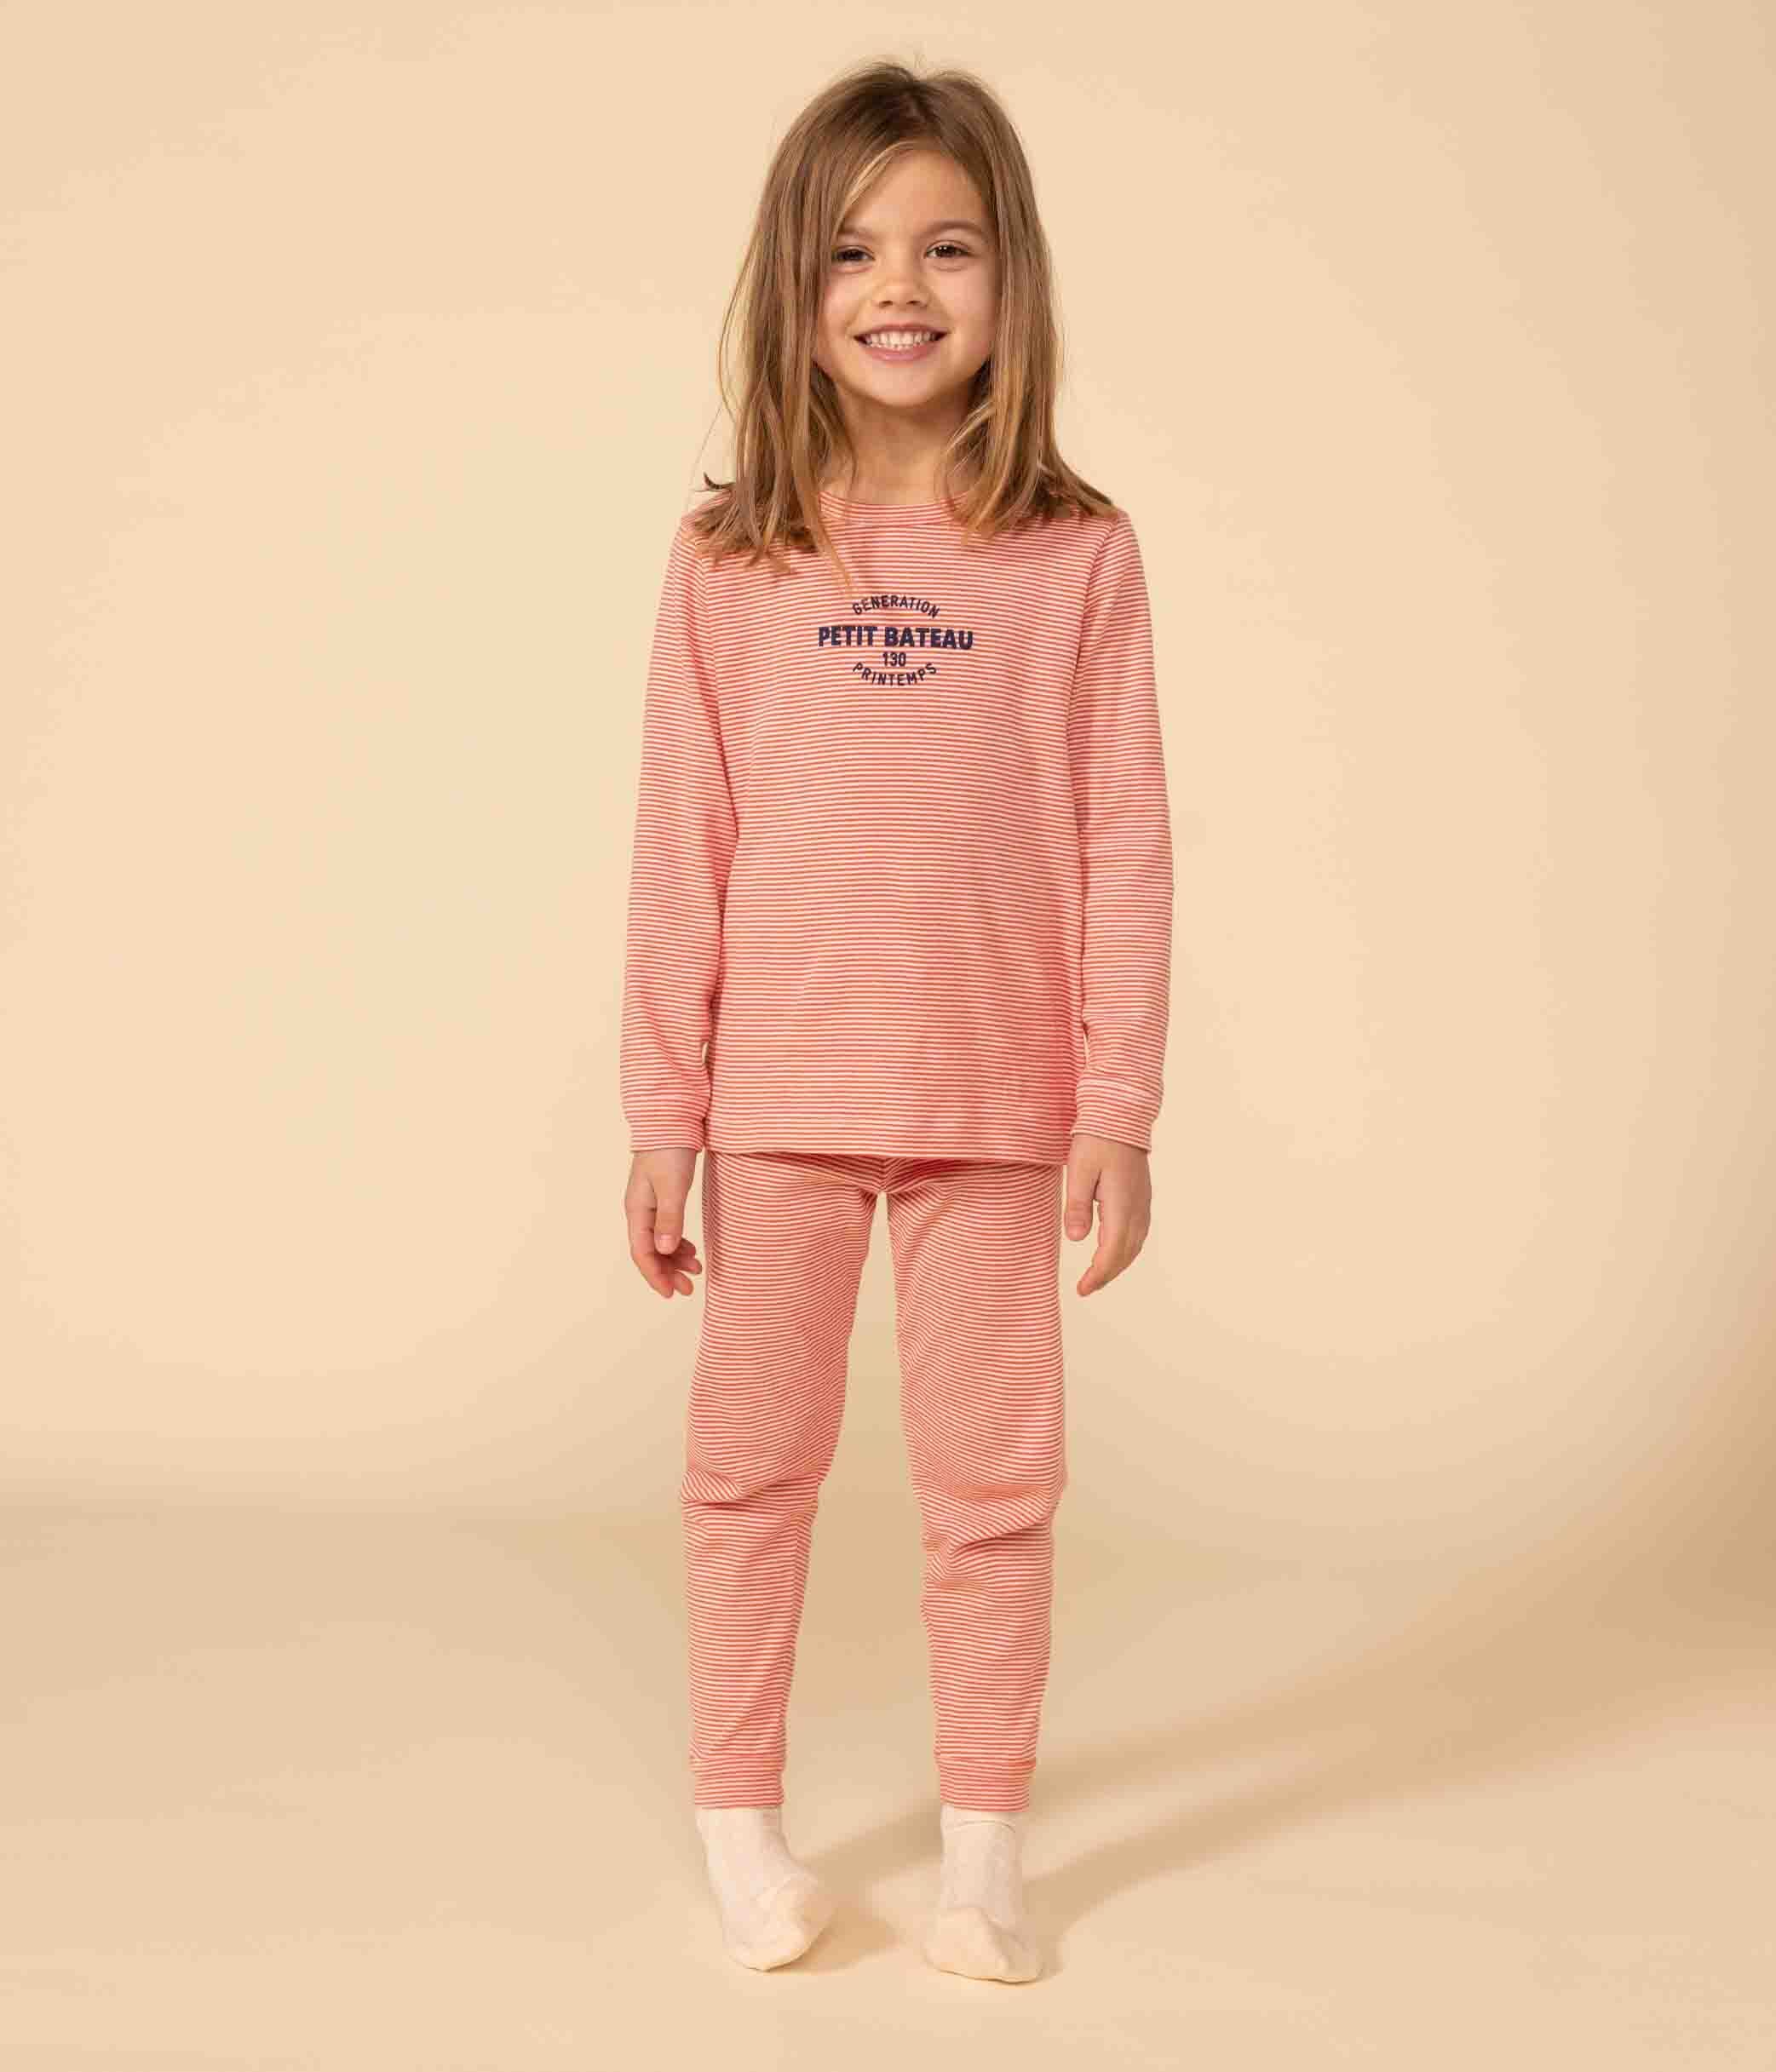 Pyjama rayé multicolore petite fille Petit Bateau / Grand Magasin